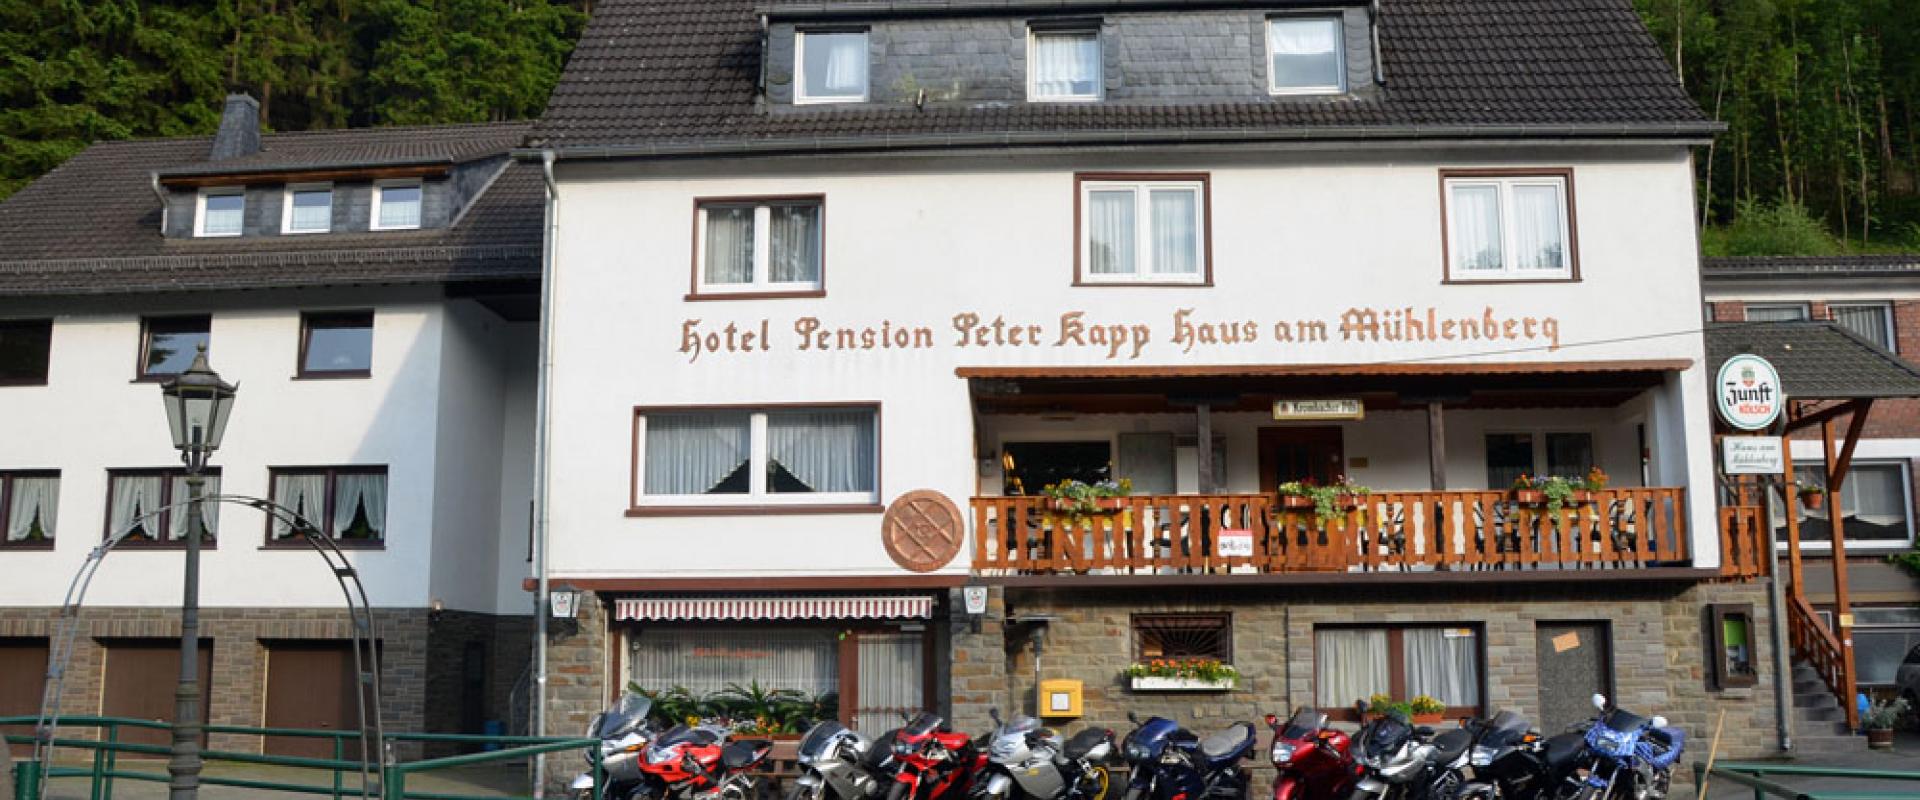 11771 Biker Hotel Haus am Mühlenberg im Westerwald.jpg